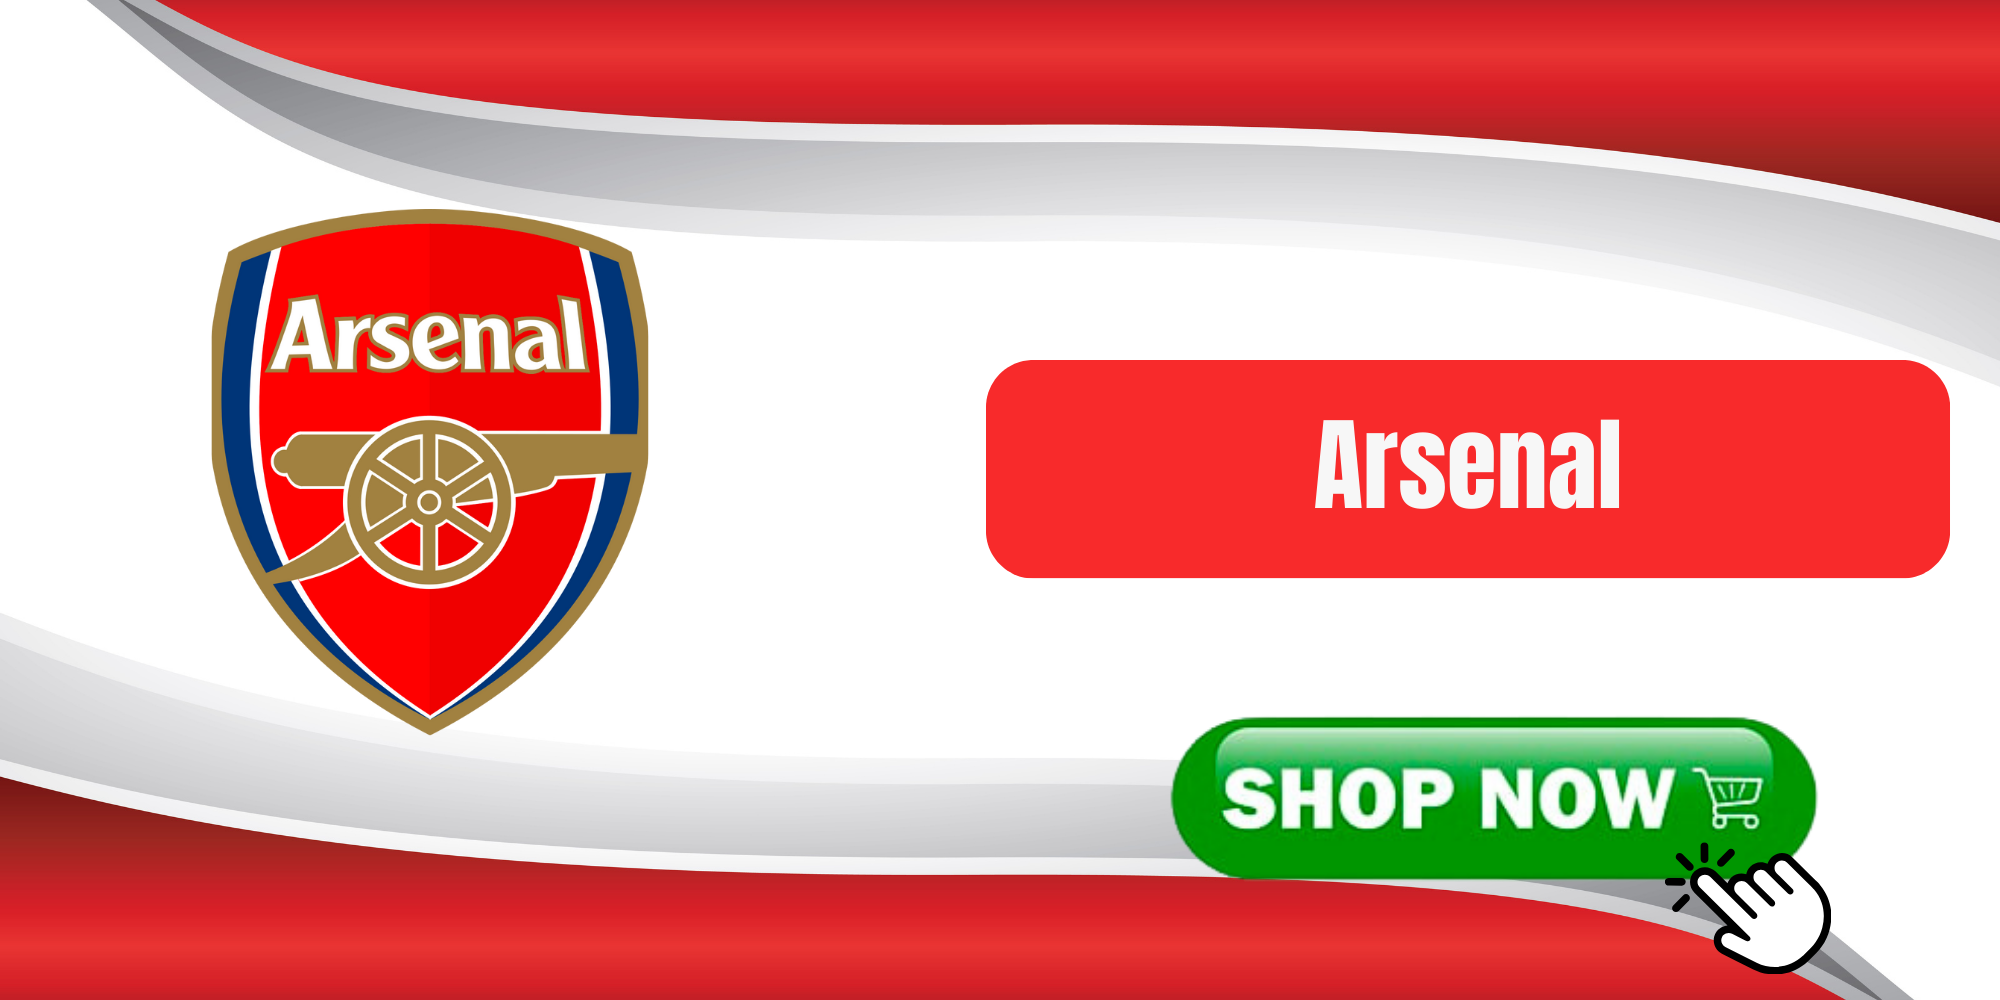 Arsenal Shop